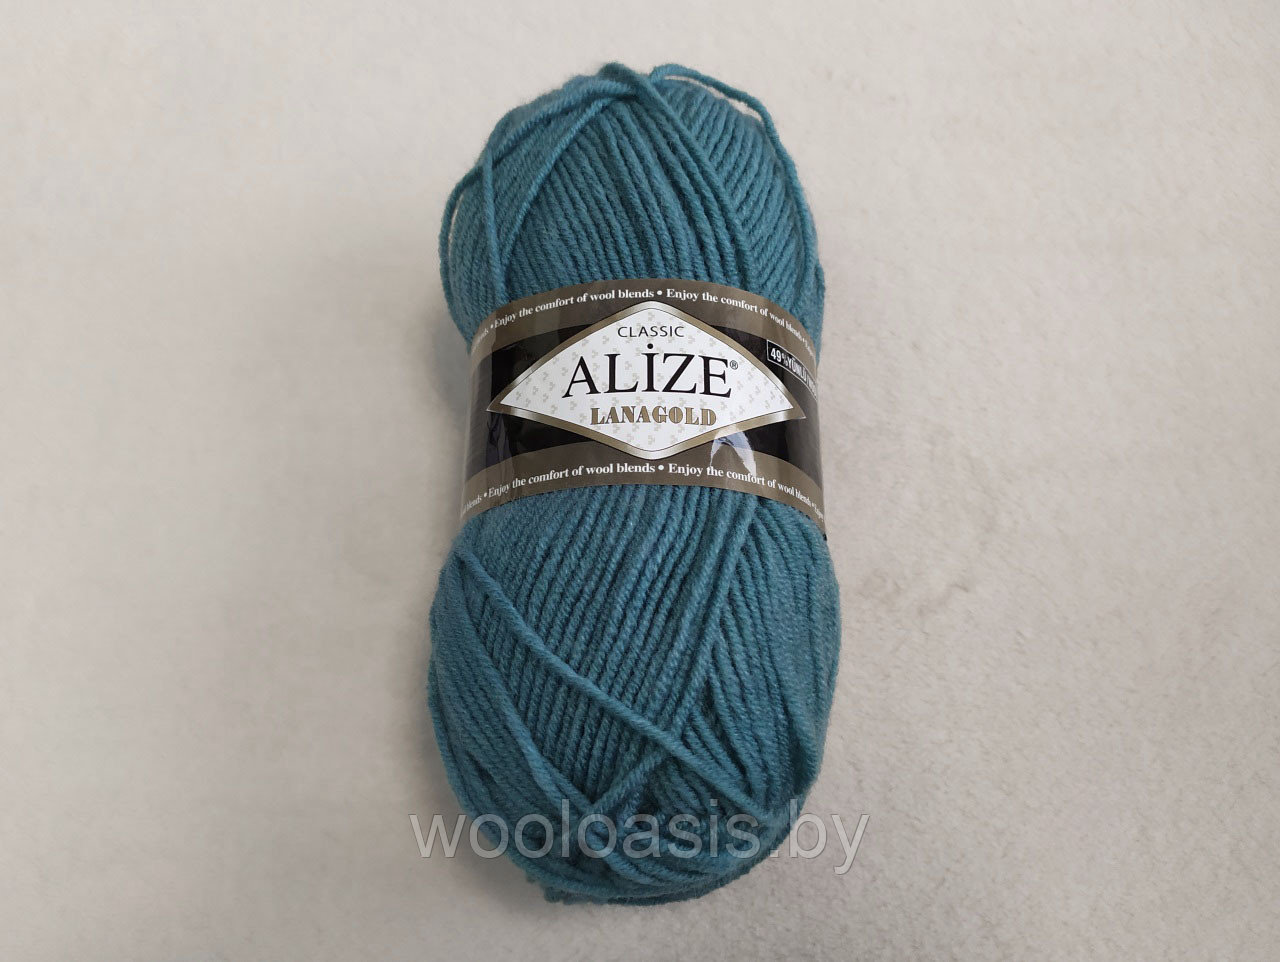 Пряжа Alize Lanagold Classic, Ализе Ланаголд Классик, турецкая, шерсть с акрилом, для ручного вязания (цвет 386)